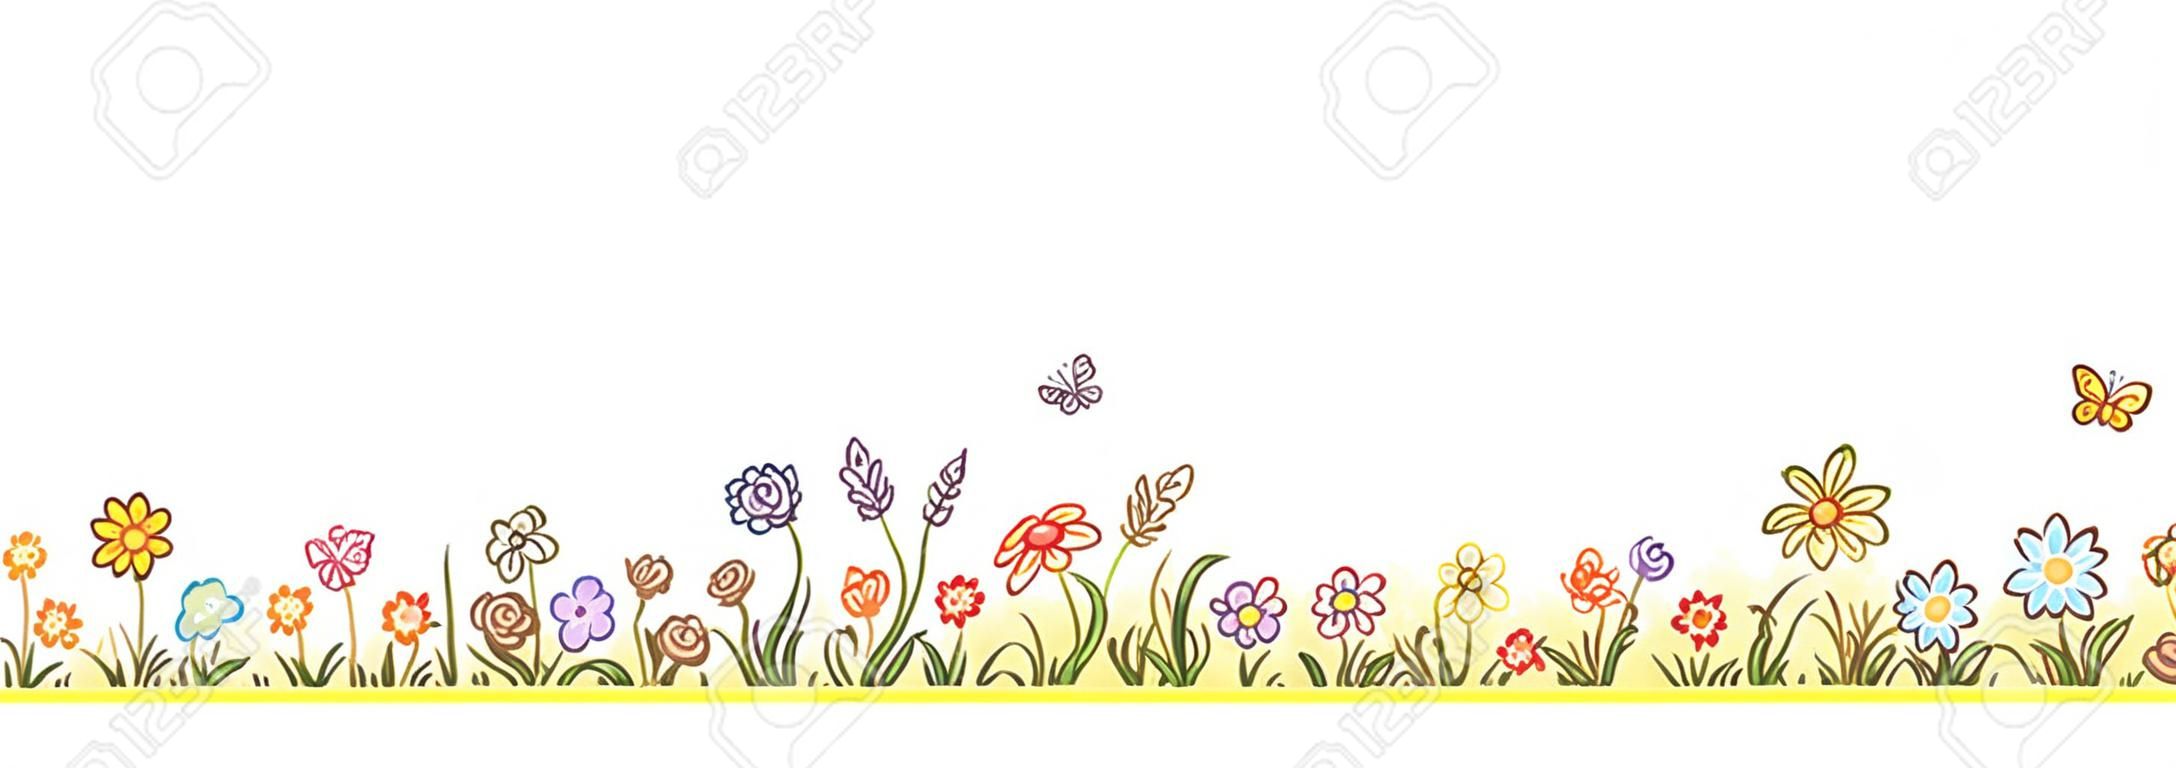 五颜六色的花边界与大量的卡通花卉草和蝴蝶没有梯度